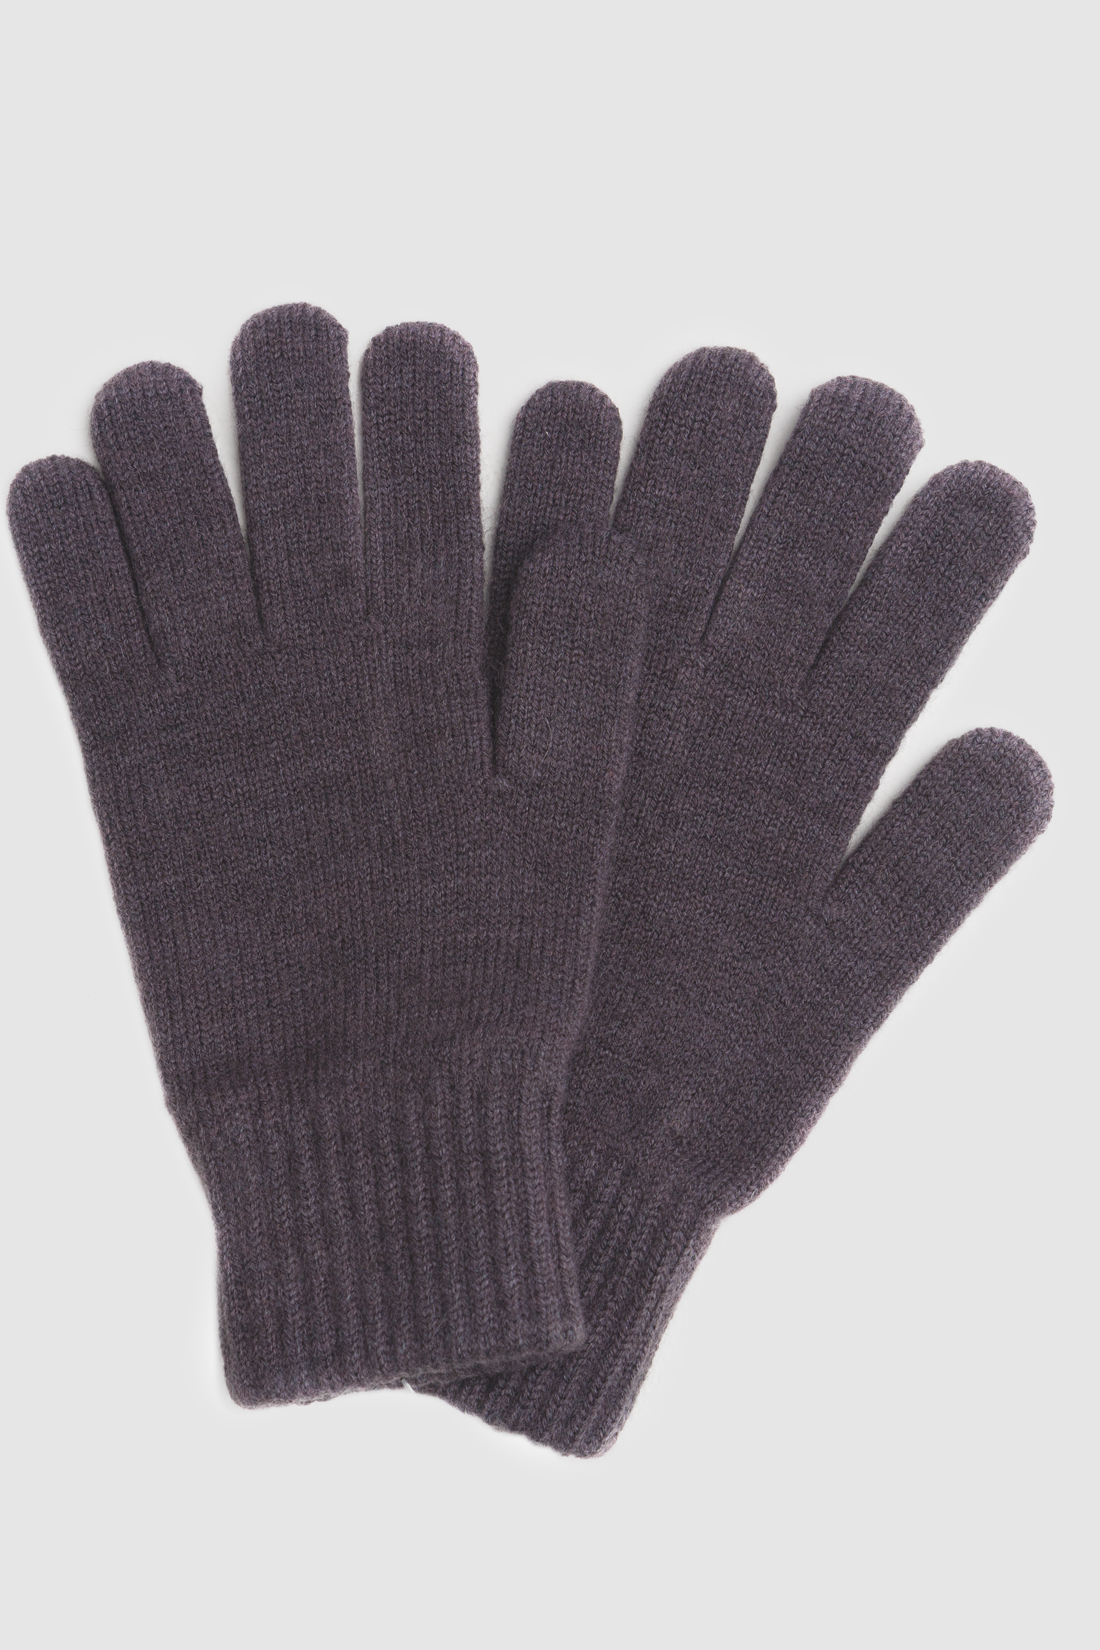 Перчатки (арт. baon B860504), размер Без/раз, цвет серый